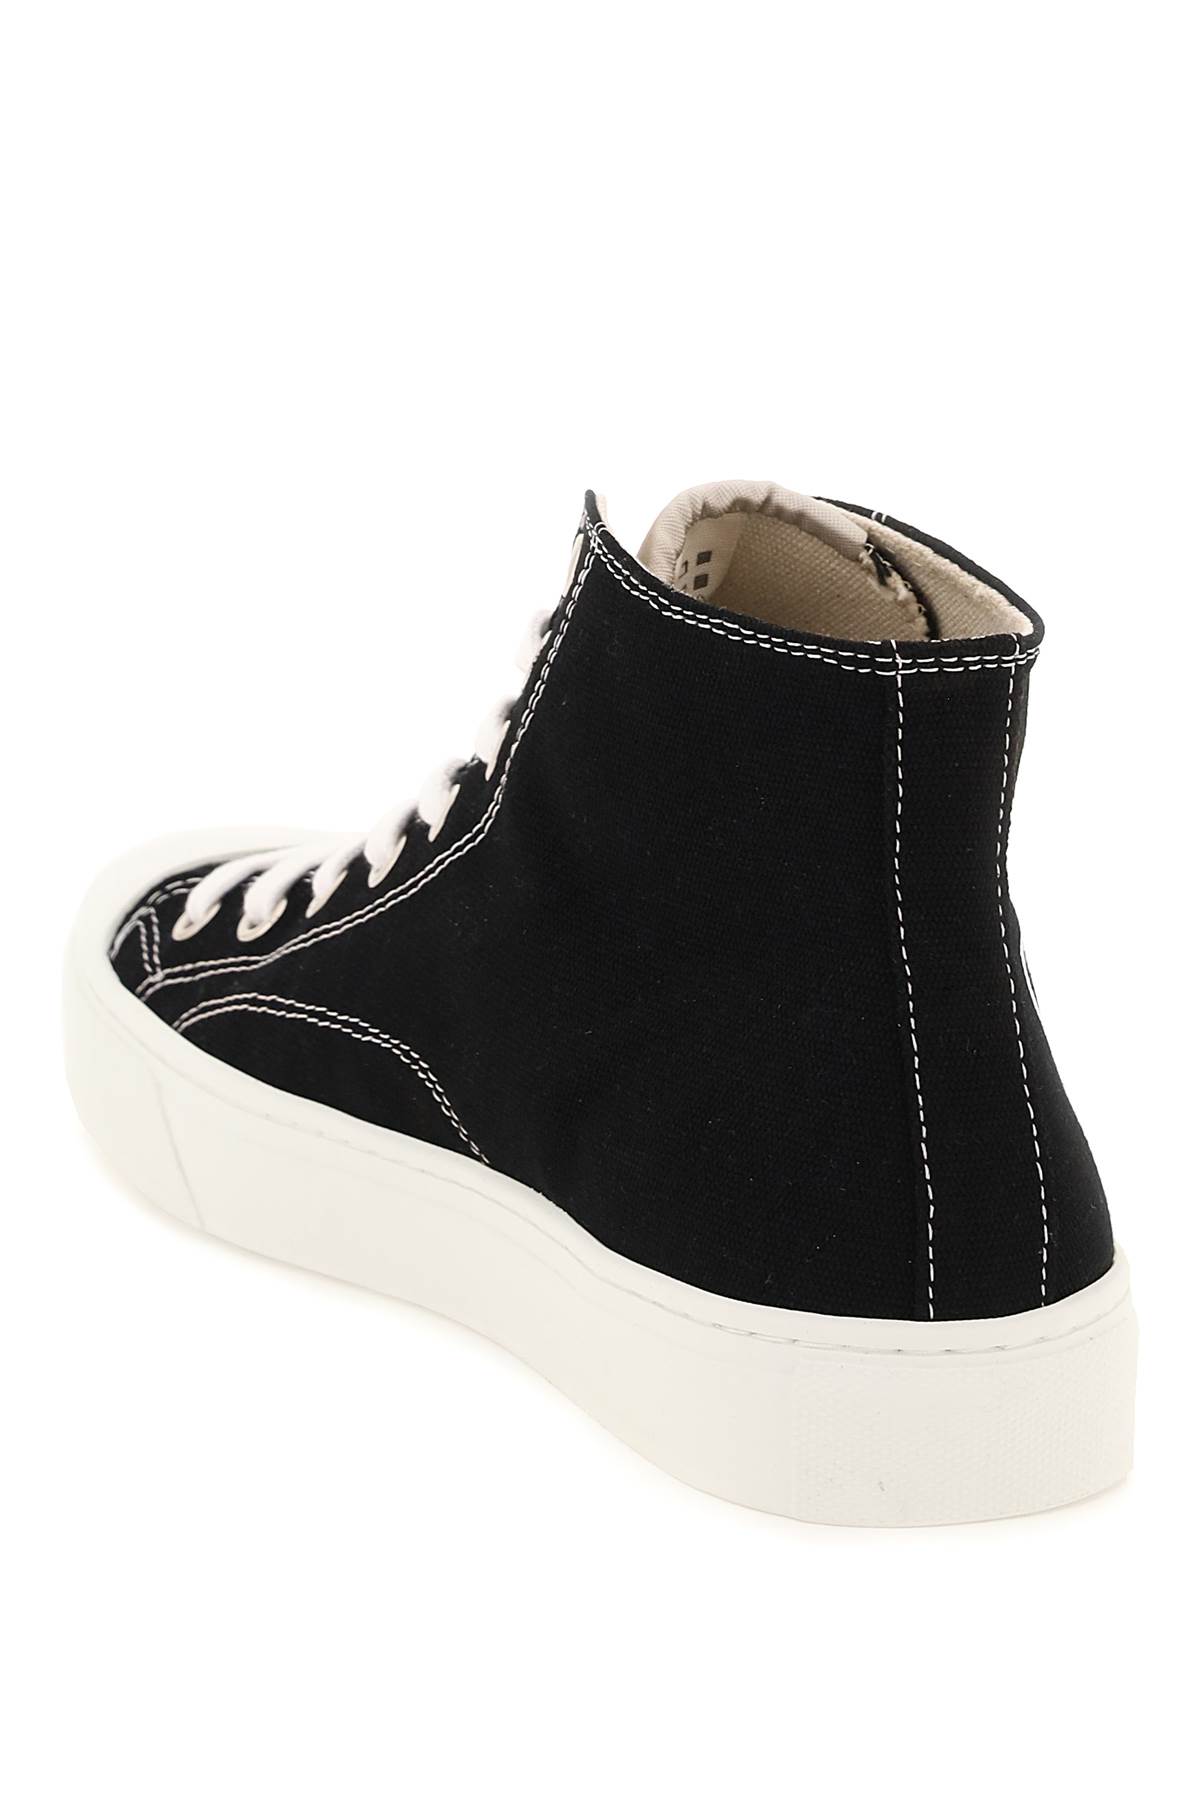 Shop Vivienne Westwood Plimsoll High Top Sneakers In Black (black)